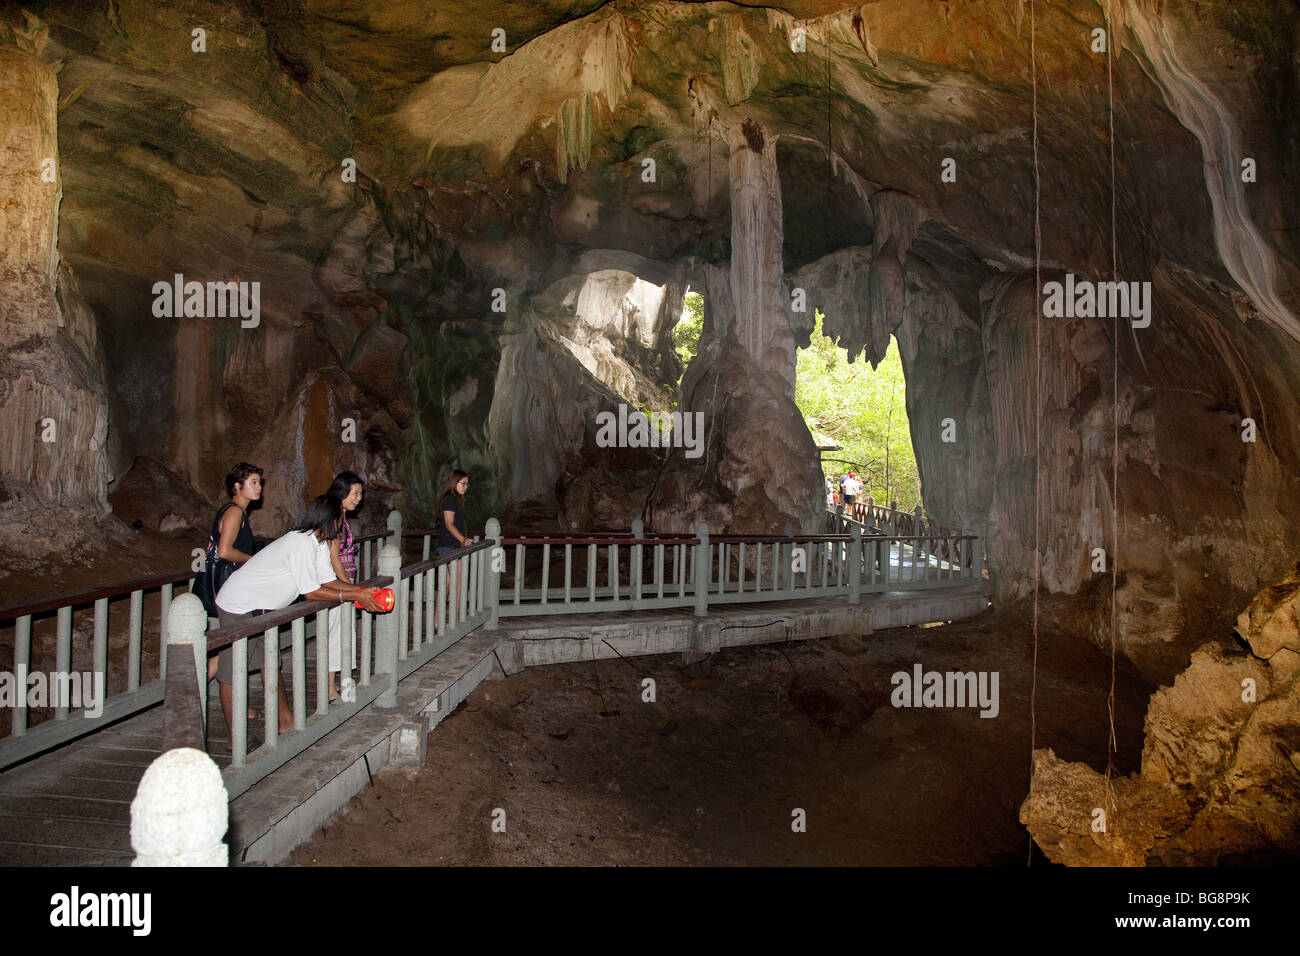 Geopark Langkawi, Malaisie, grotte de chauves-souris de l'intérieur en granit avec des touristes dans le passage libre Banque D'Images